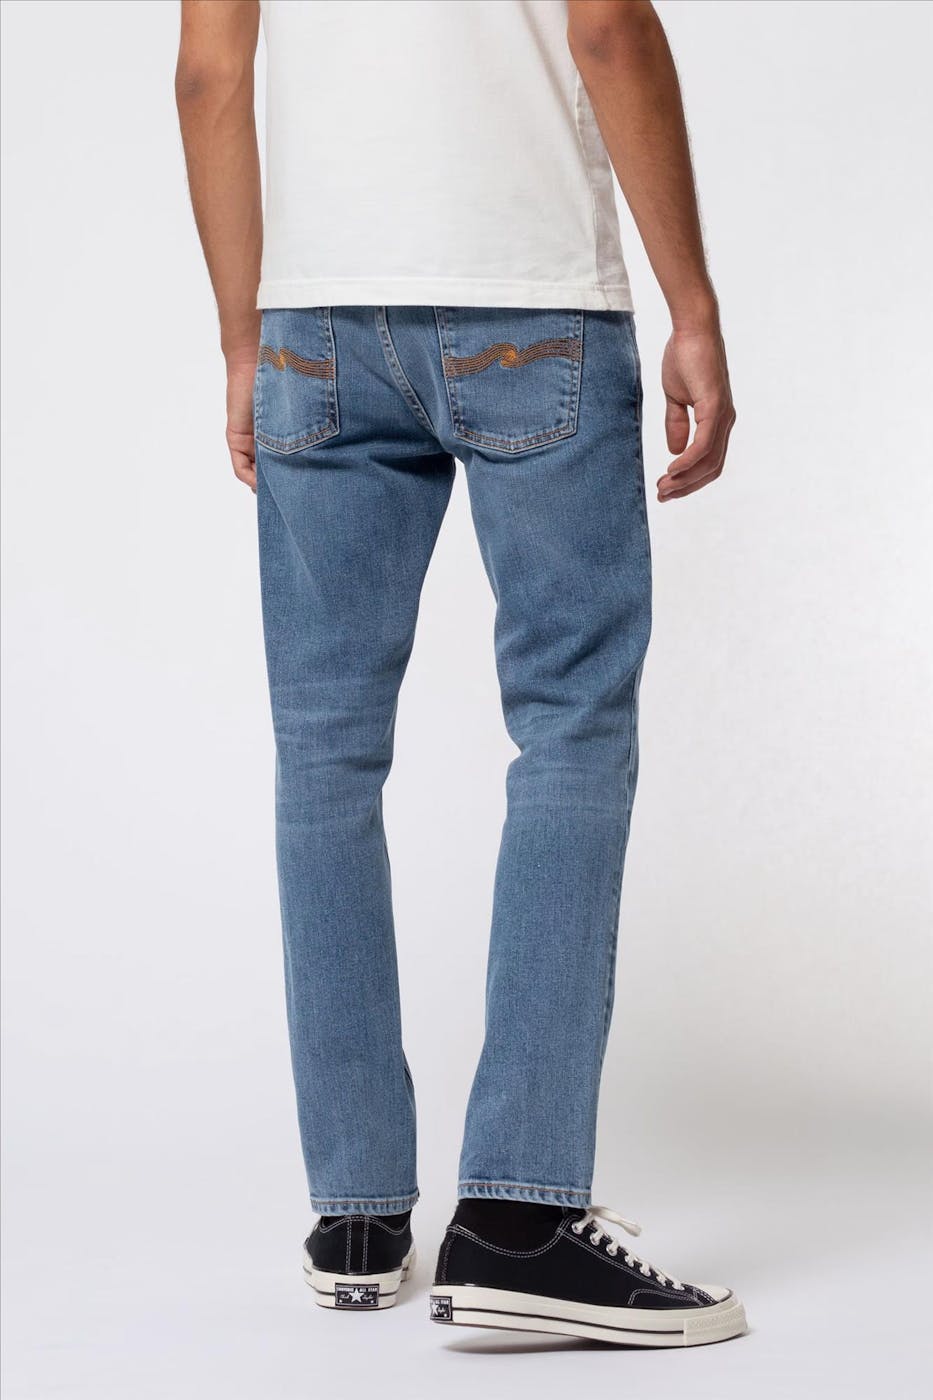 Nudie Jeans Co. - Indigoblauwe Lean Dean slim tapered jeans